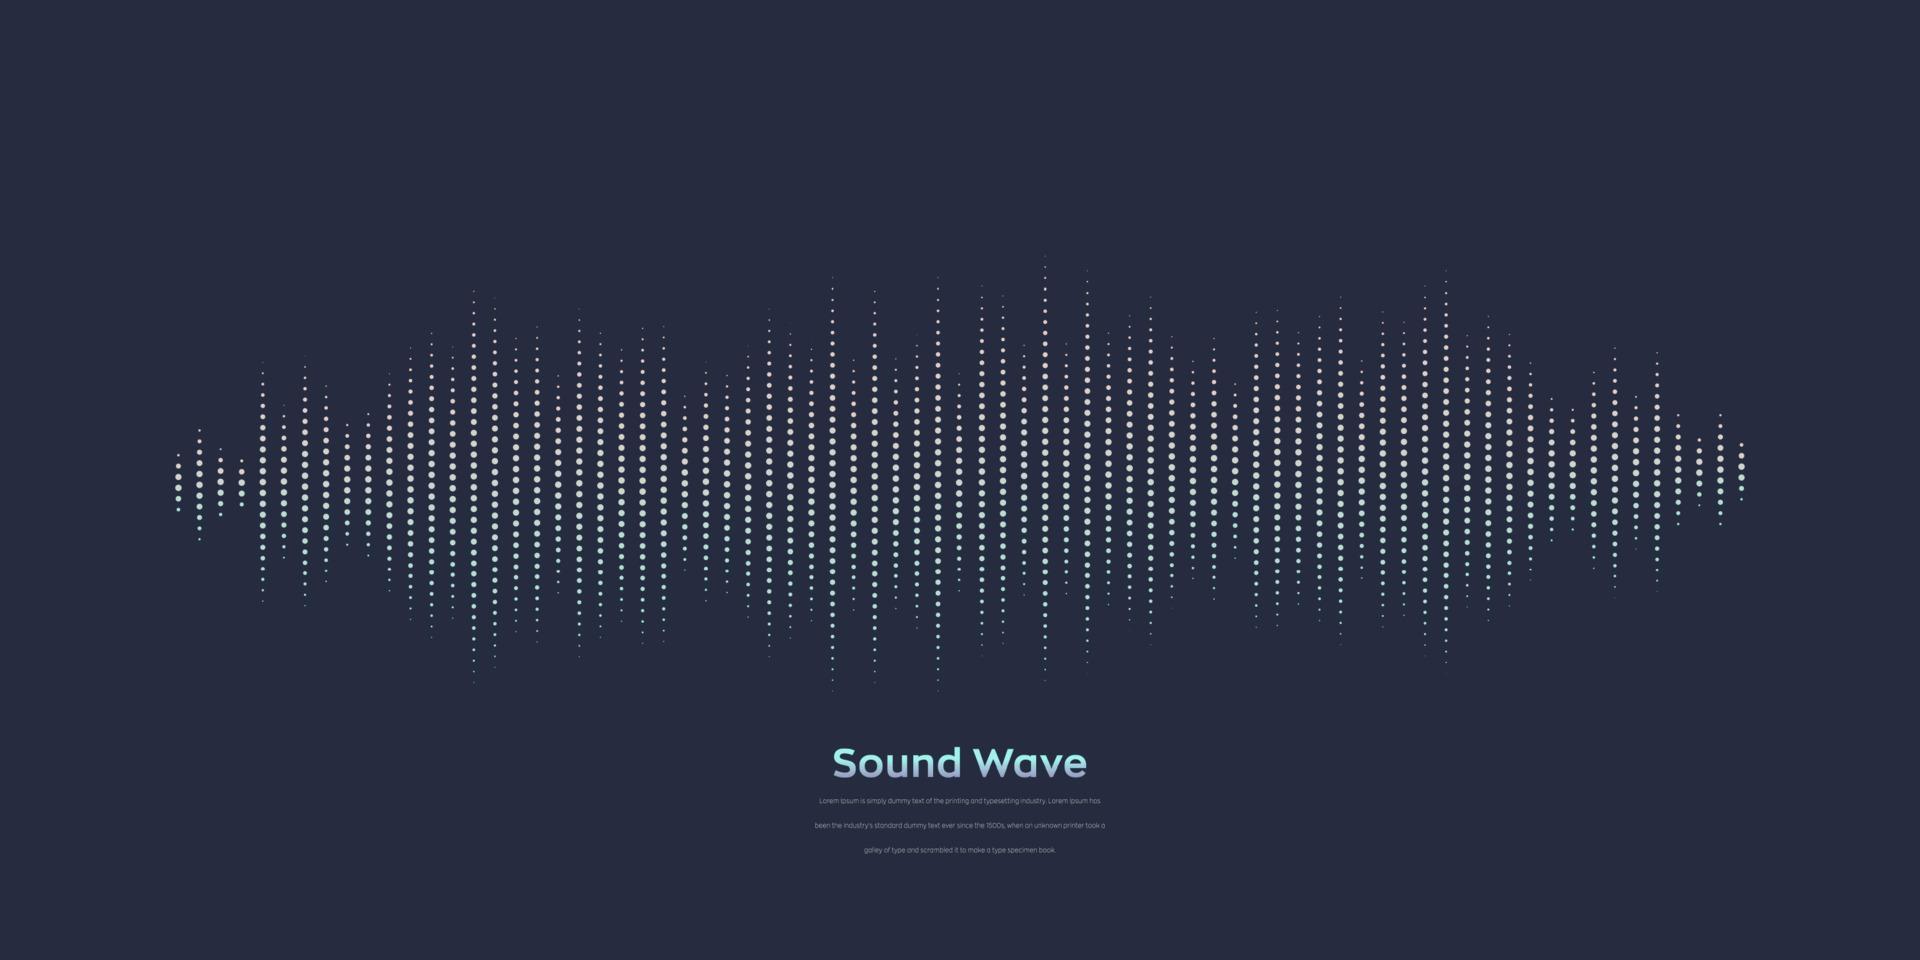 onda sonora vettoriale. equalizzatore digitale colorato astratto. grafico dell'onda audio di frequenza e spettro illustrazione vettoriale su sfondo scuro.